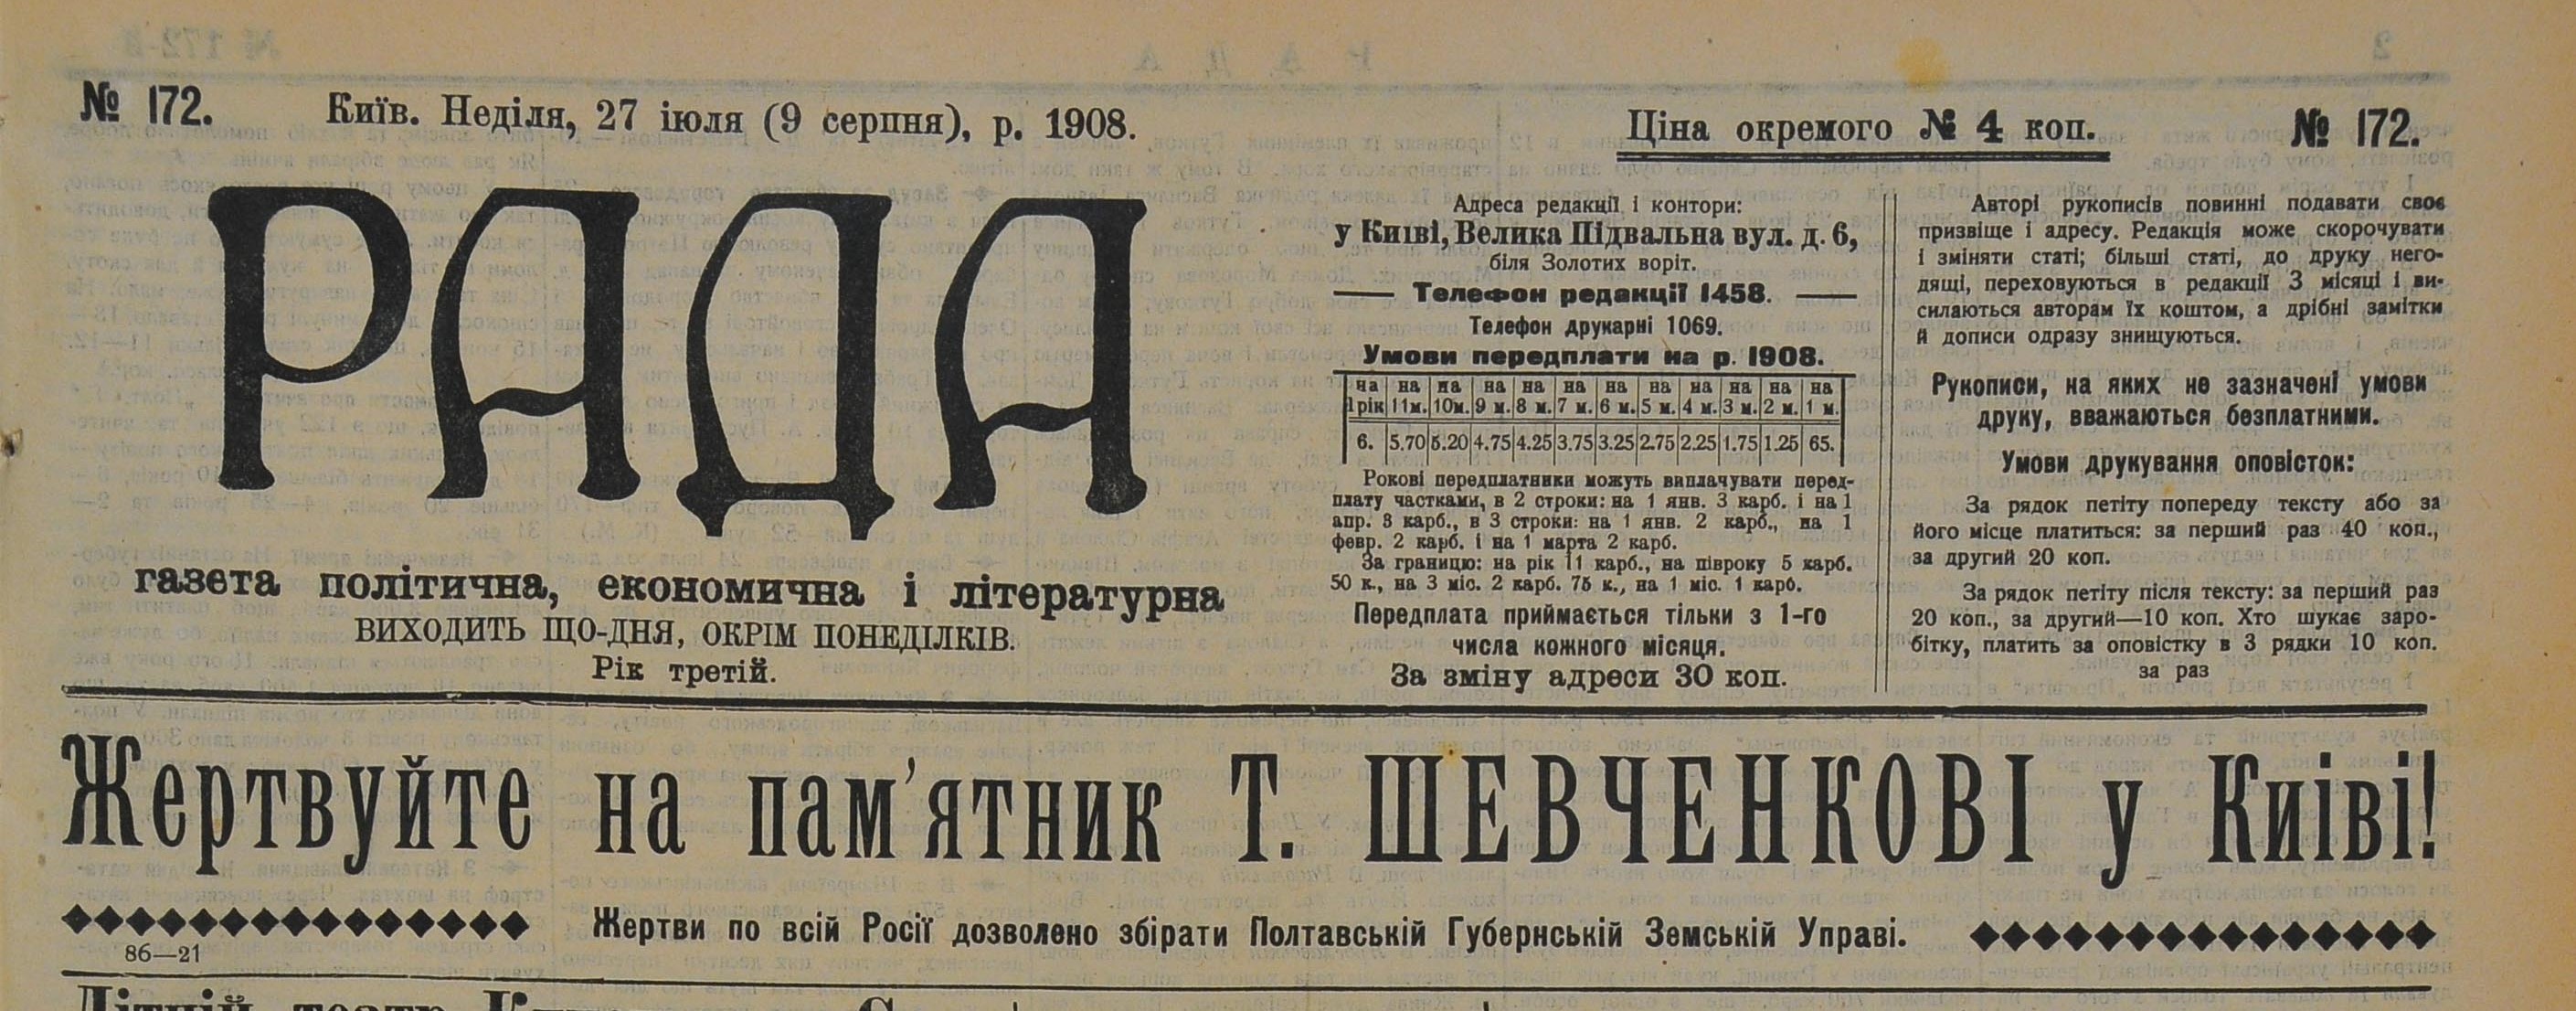 Первая страница газеты «Рада», 1908 год